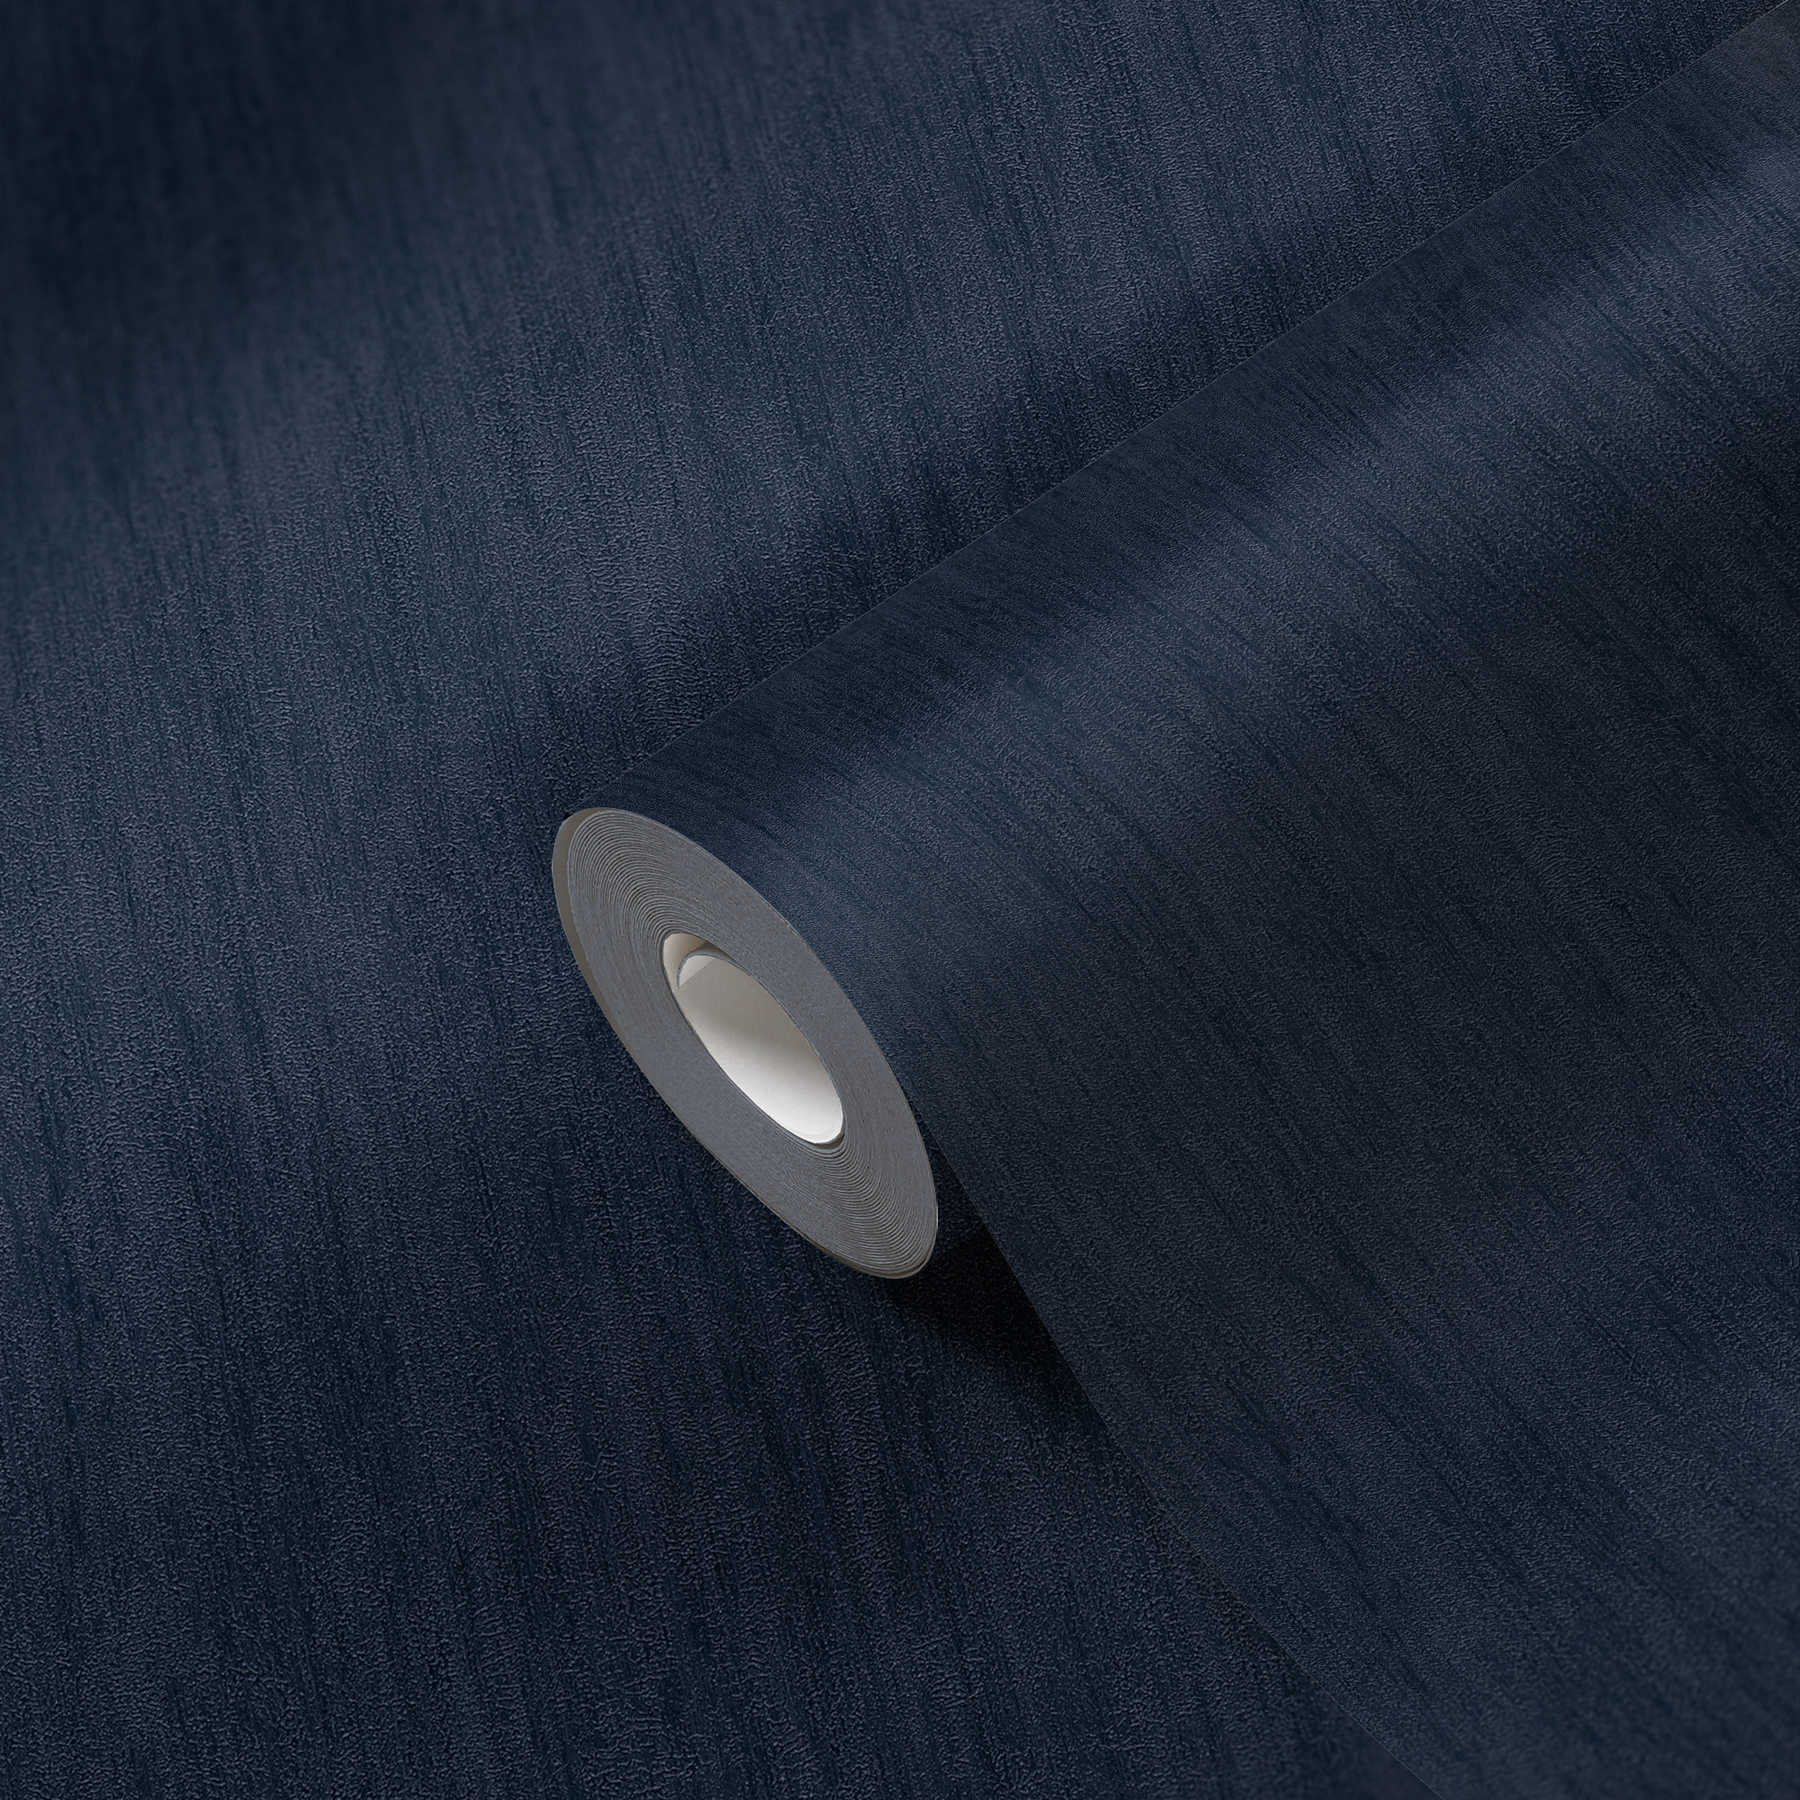             Behang donkerblauw met glans effect & natuurlijke structuur ontwerp
        